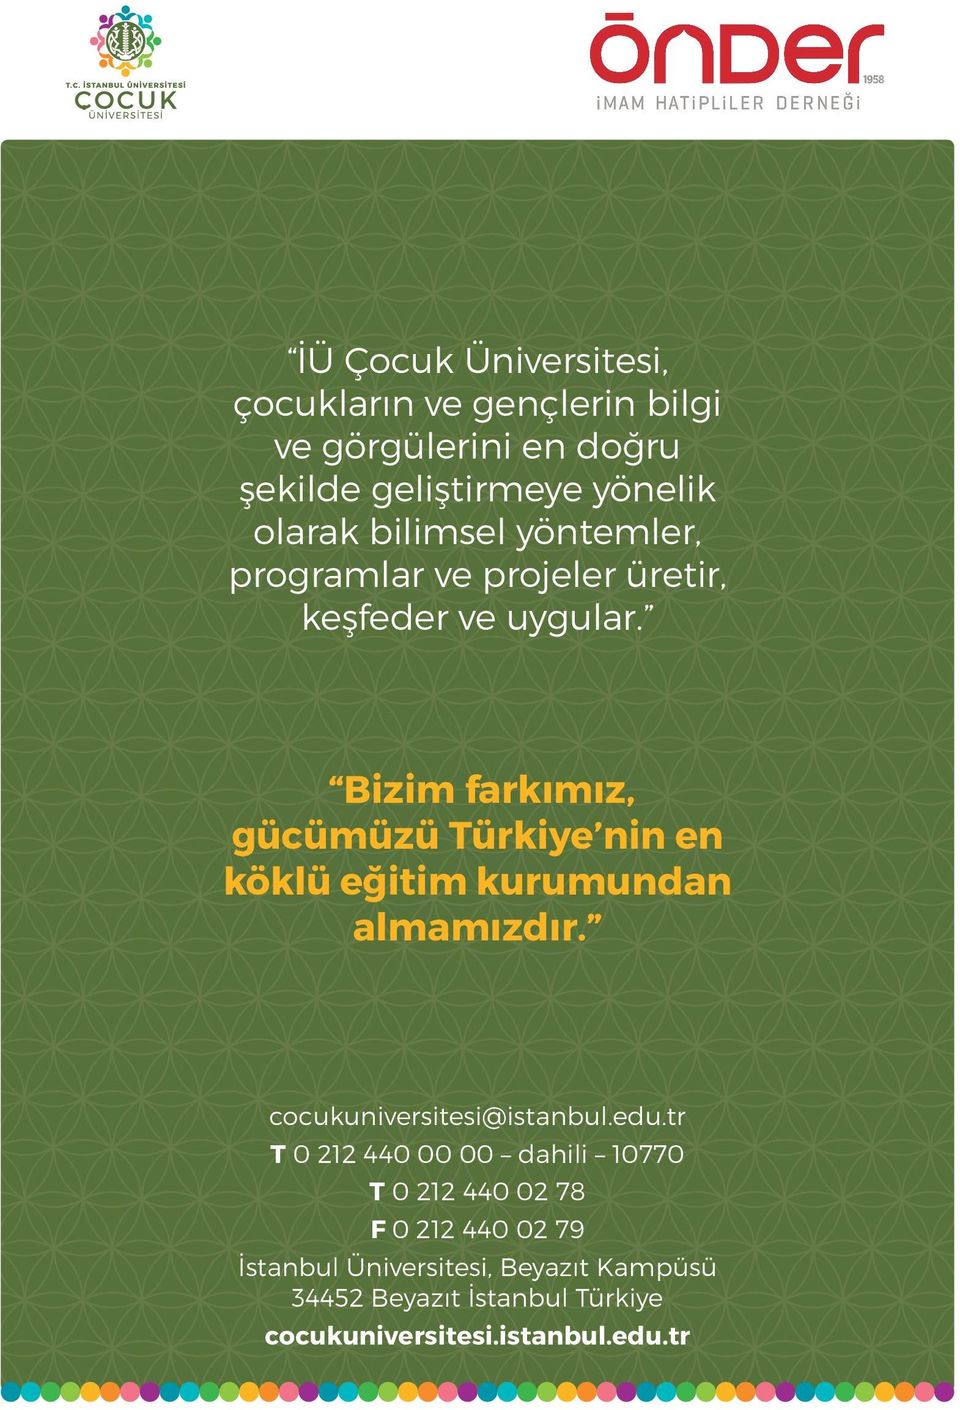 Bizim farkımız, gücümüzü Türkiye nin en köklü eğitim kurumundan almamızdır. cocukuniversitesi@istanbul.edu.